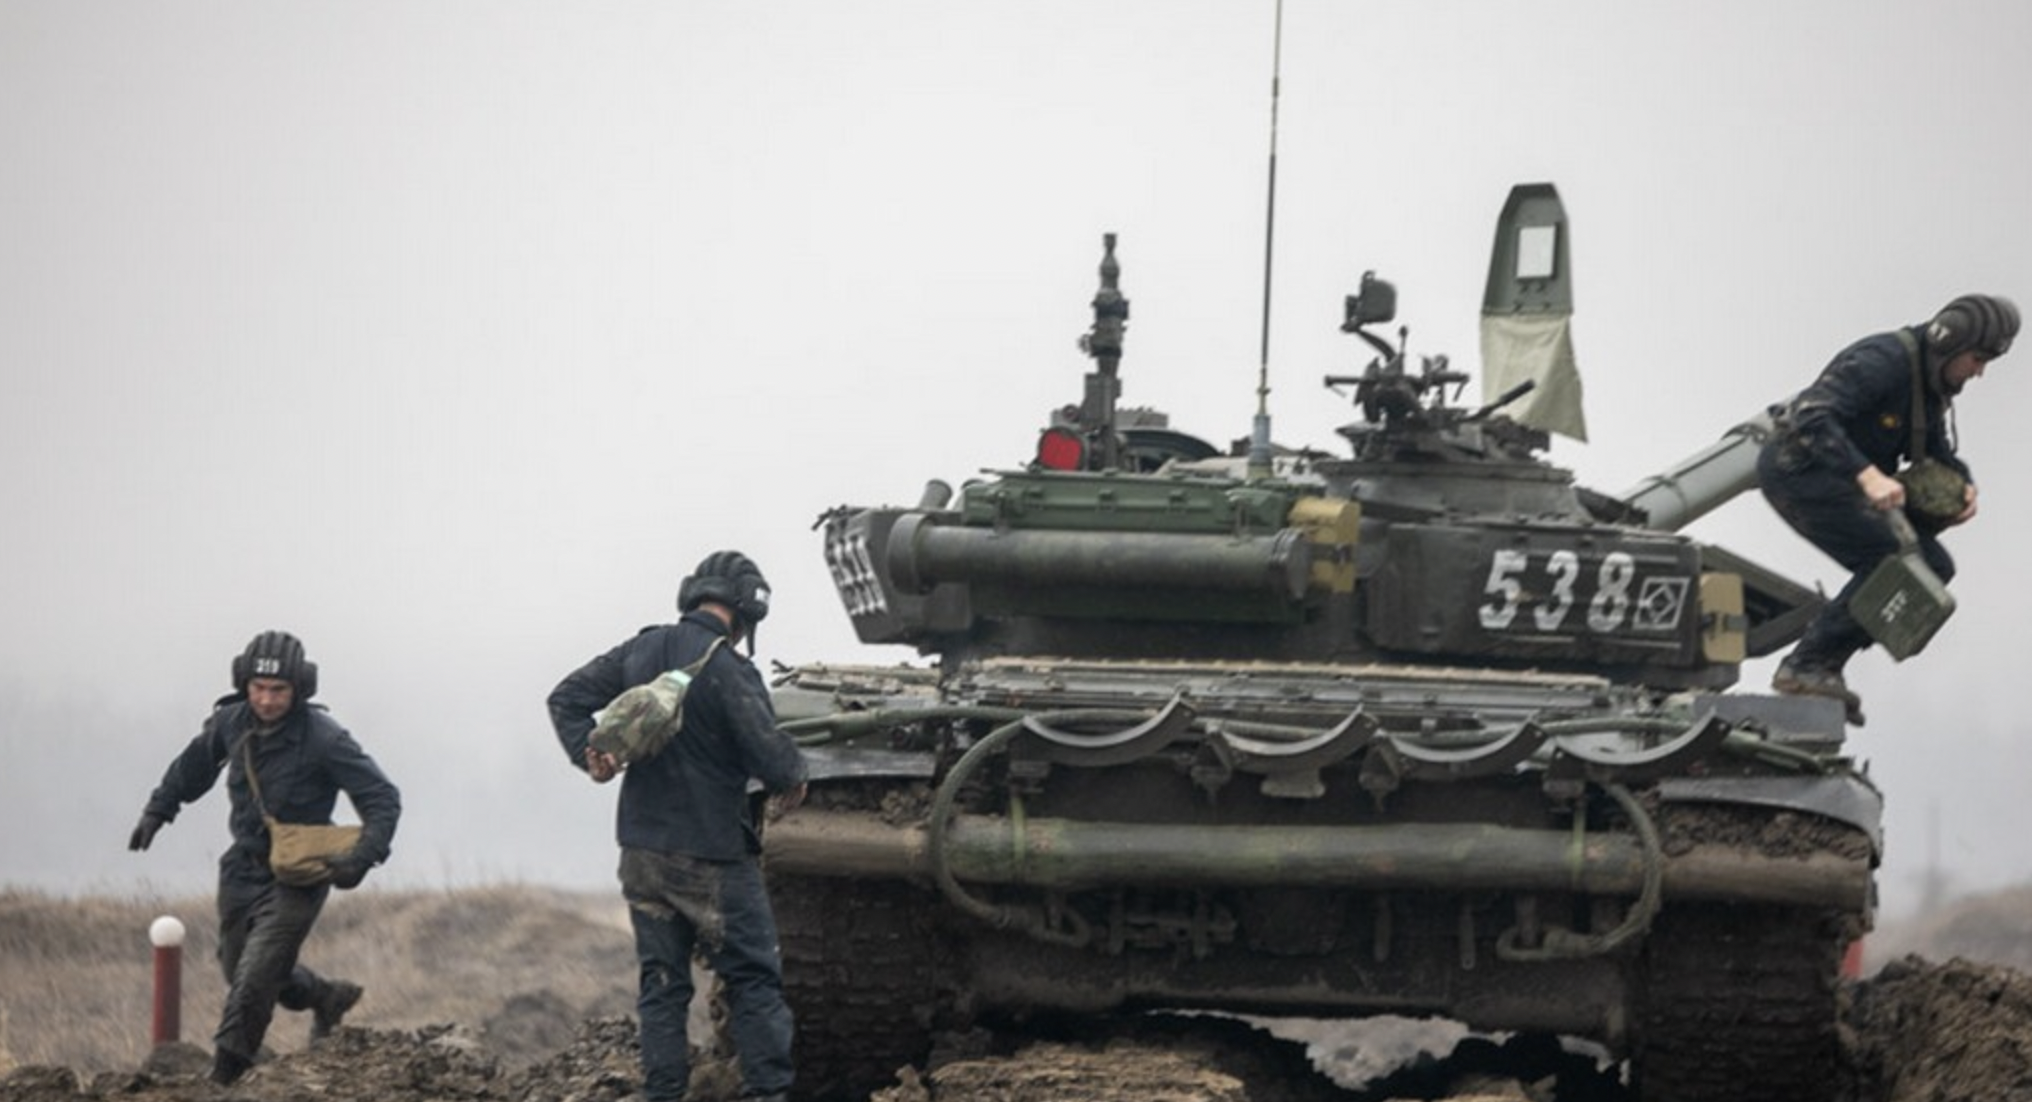 Ρωσία: Η Ουκρανία αρνείται διαπραγματεύσεις - Αντίποινα για τις κυρώσεις της Δύσης